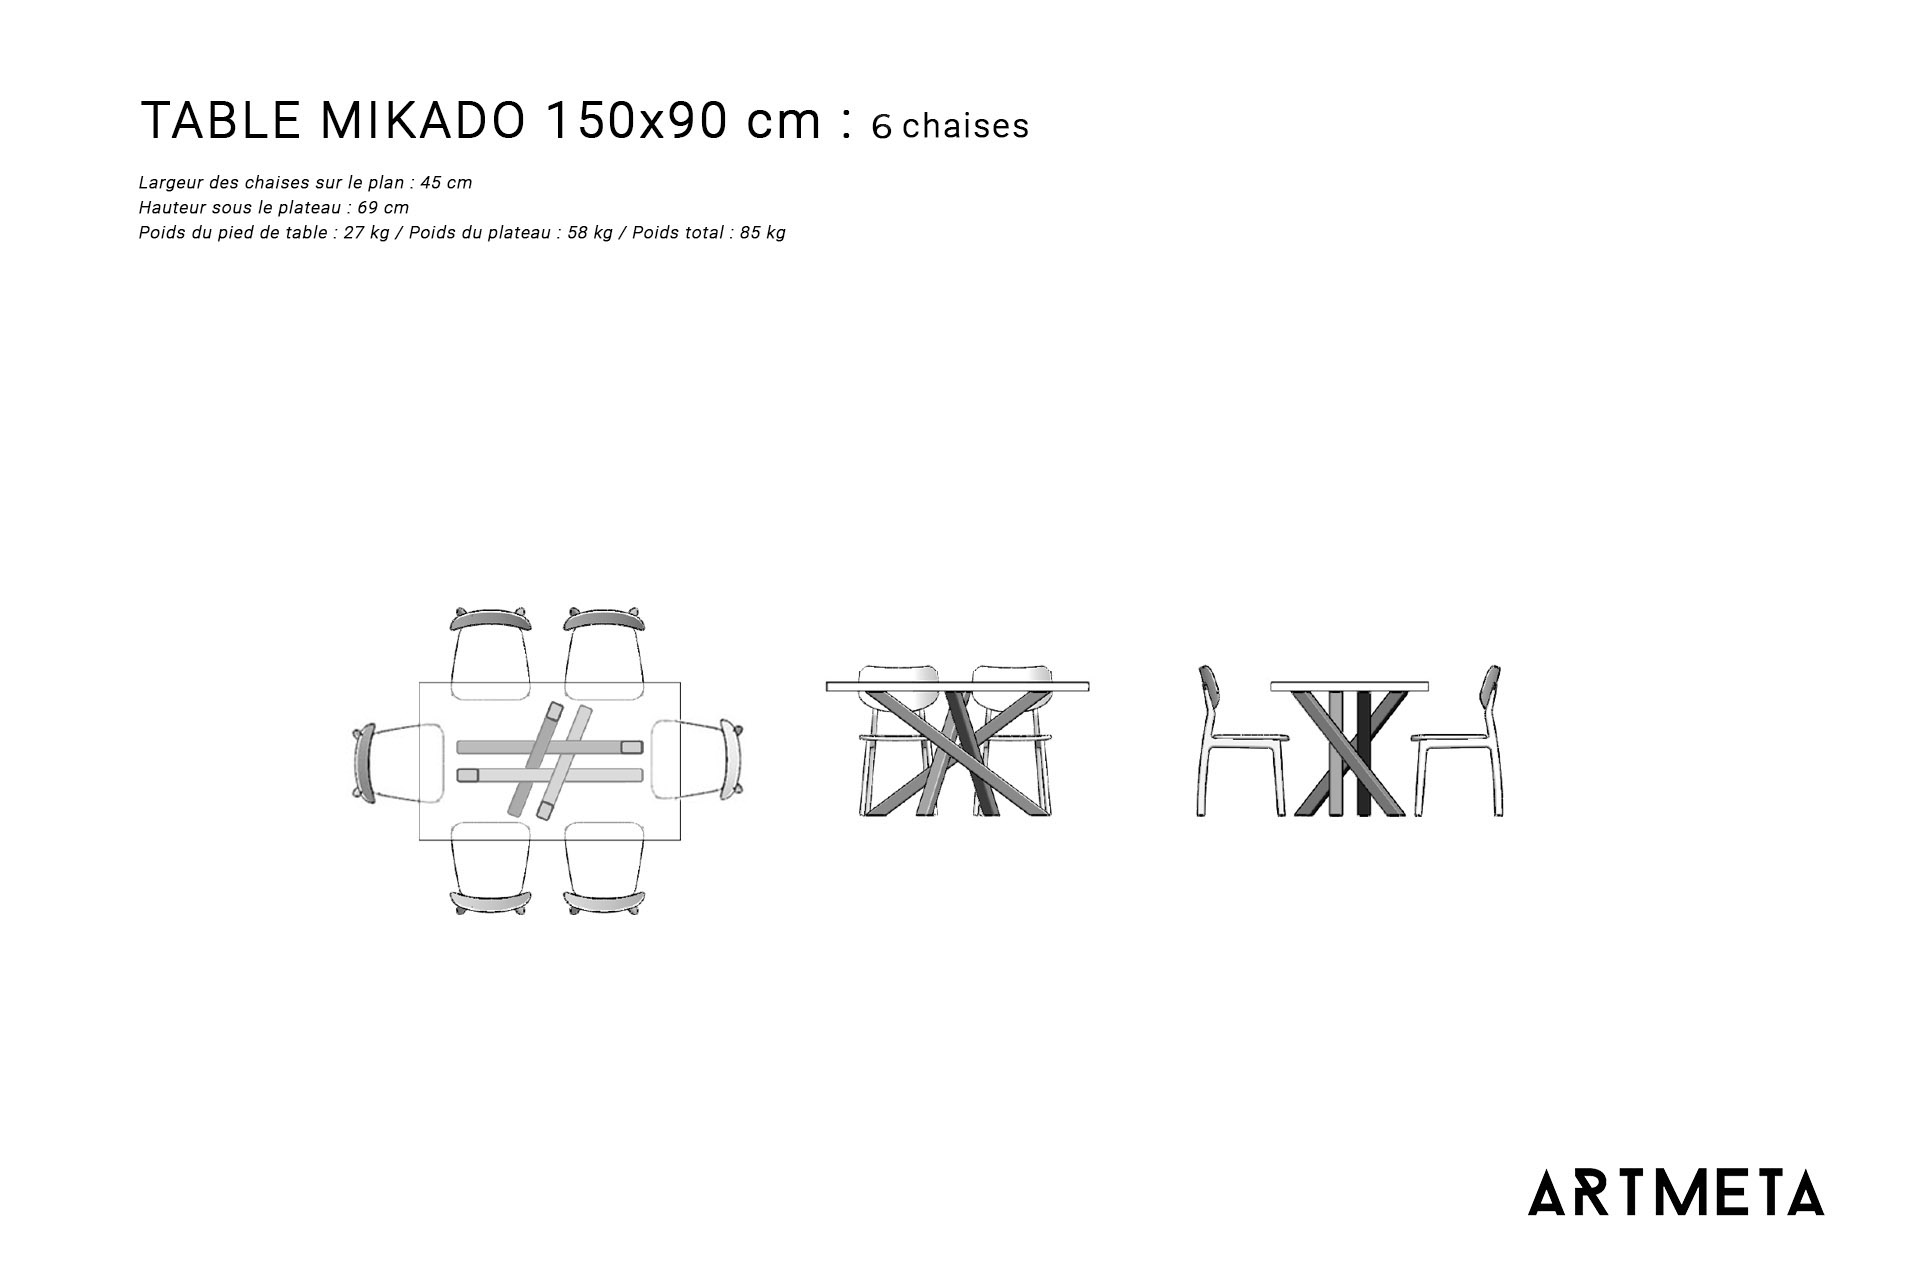 Guide des dimensions / Table à manger pour 6 personnes / Table Mikado ARTMETA